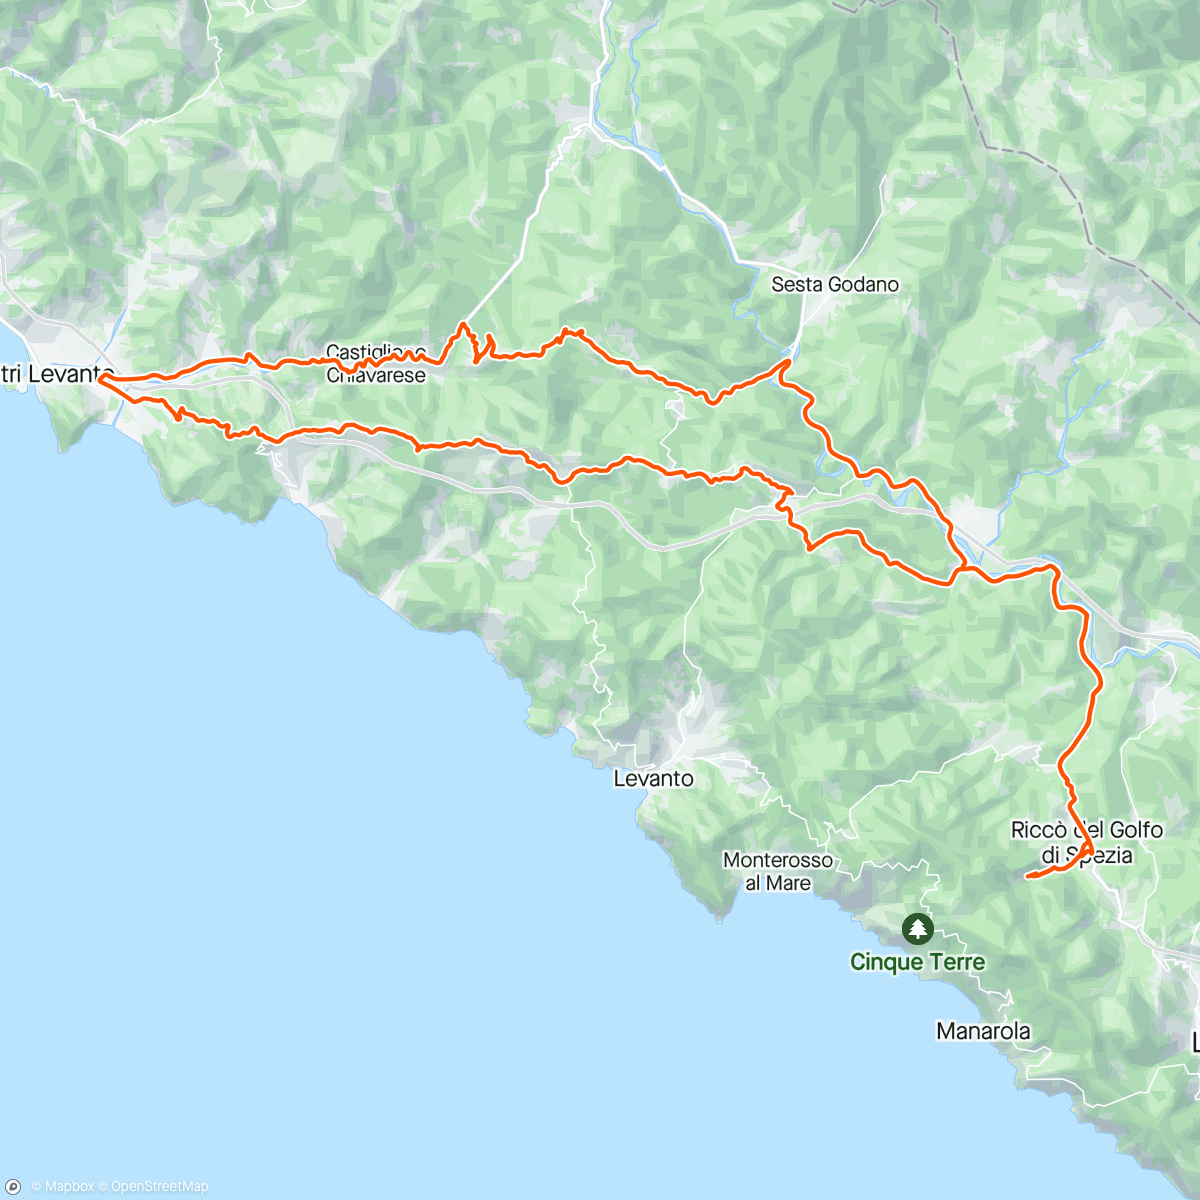 Map of the activity, Giro mattutino a seguire il giro d'italia rientro con doccia 🌧